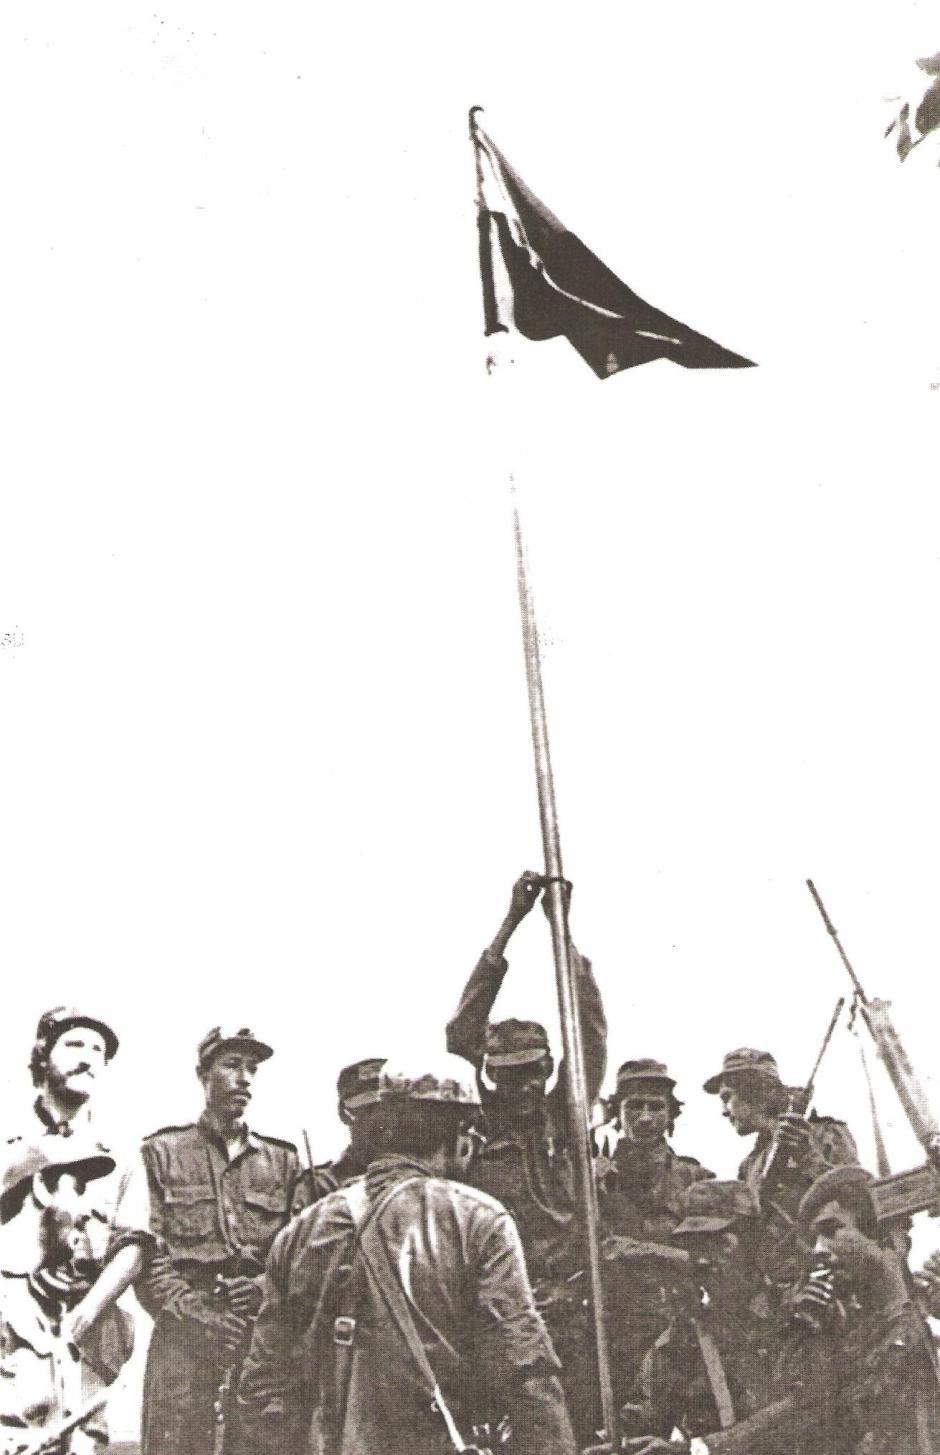   Carlos Duarte "Jerónimo" pone bandera en la toma Peñas Blancas.